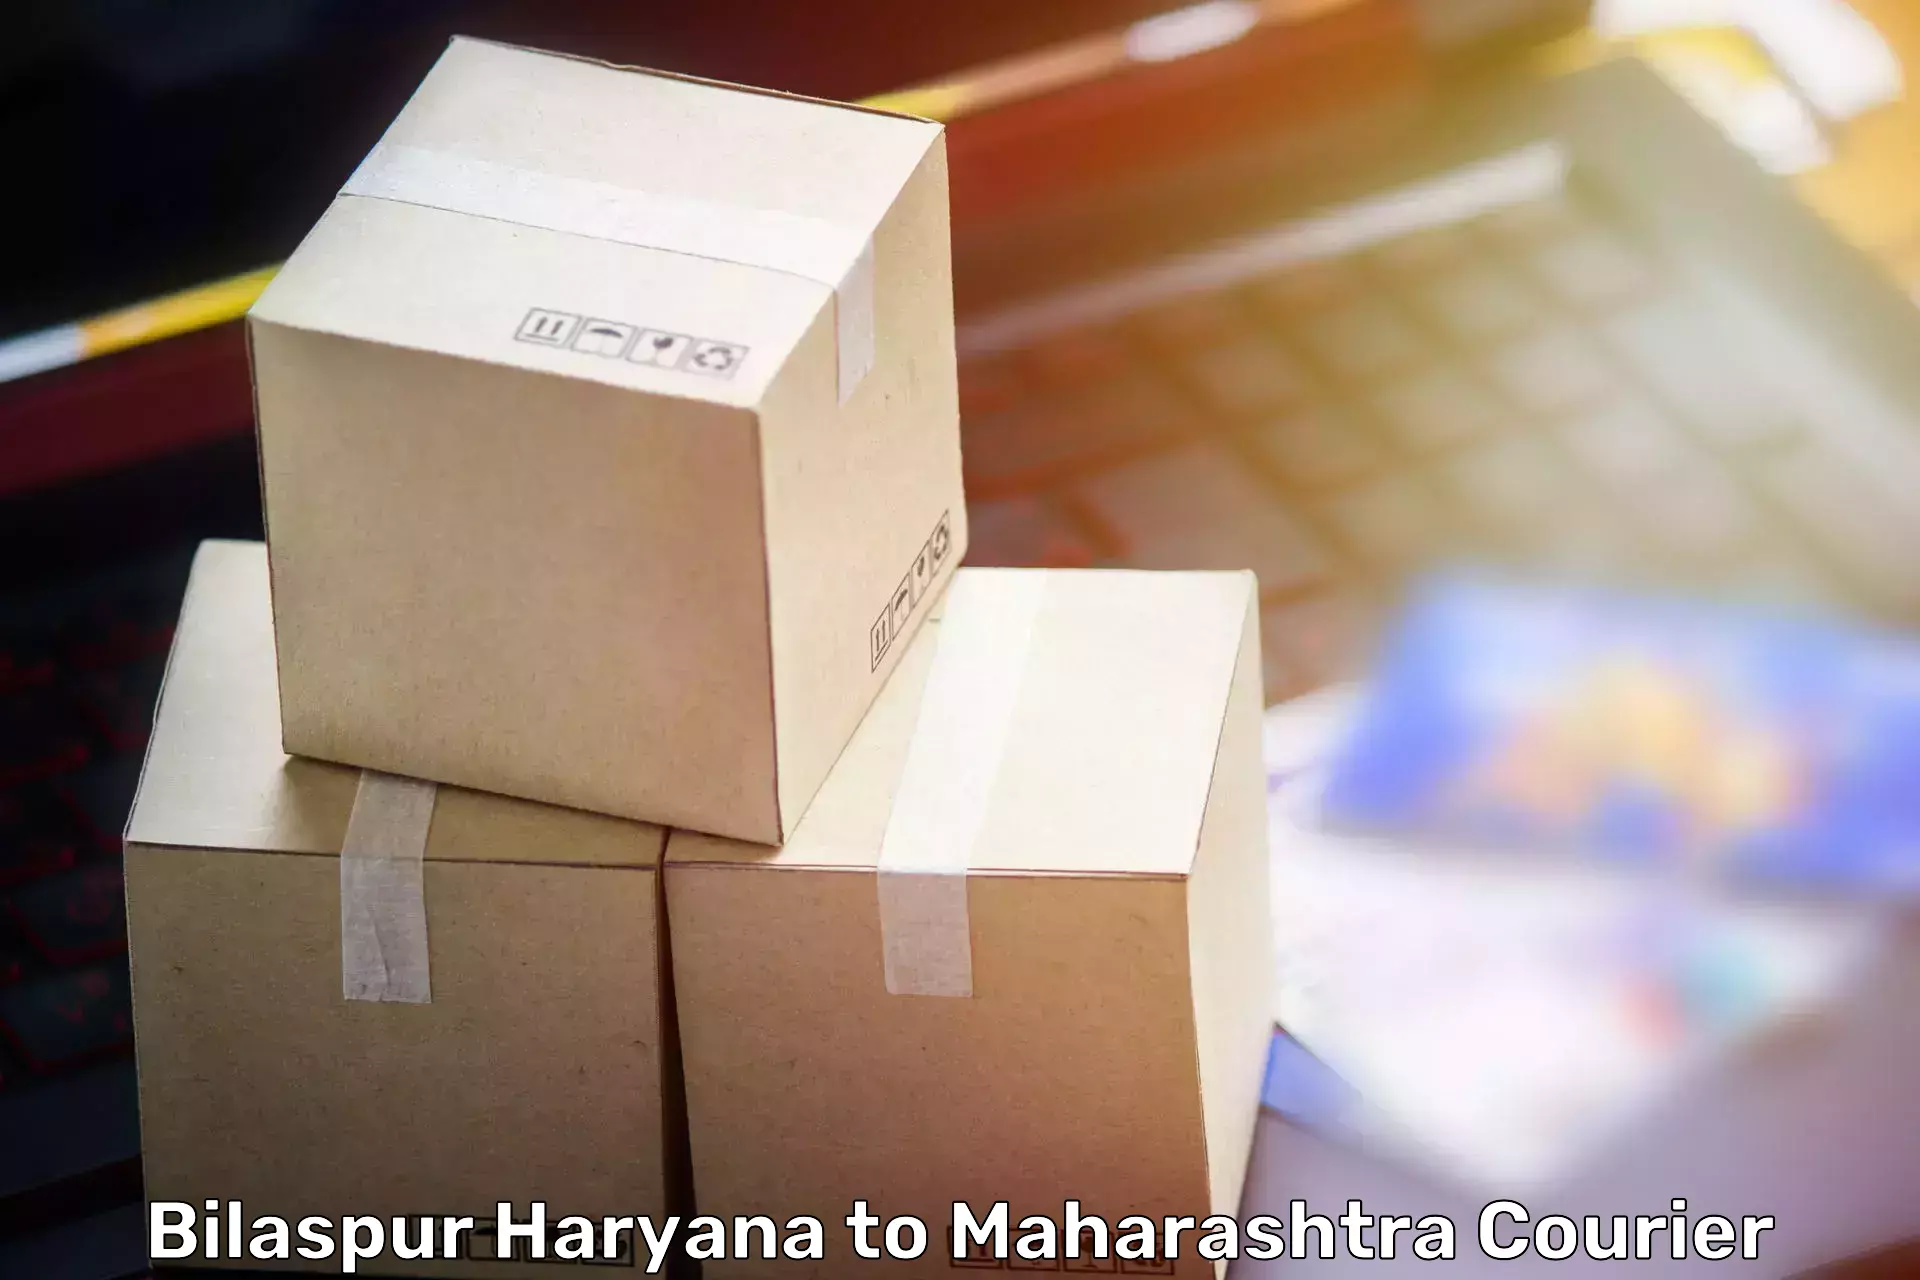 Furniture shipping services Bilaspur Haryana to Ramtek